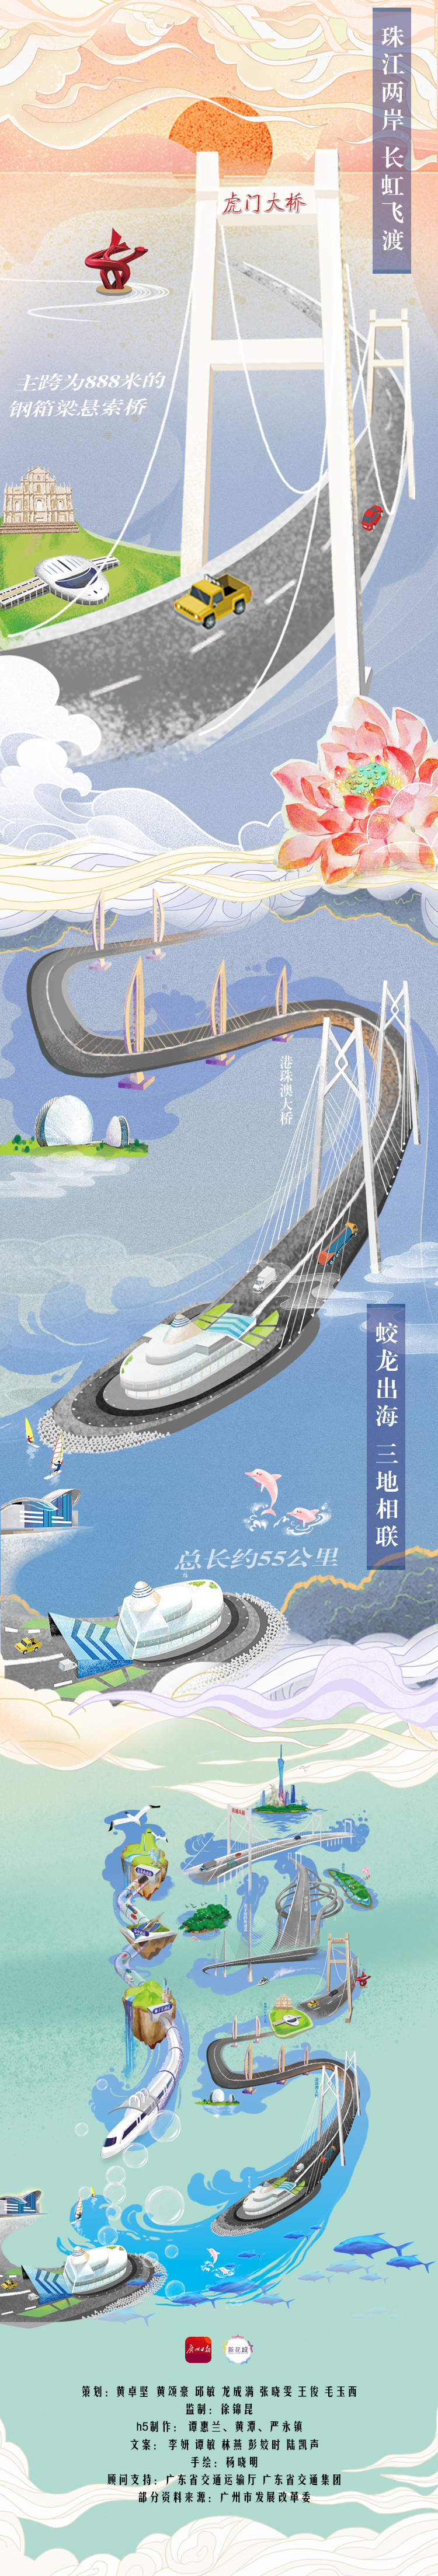 中国 中国聚焦  深中通道成就"珠中江"经济圈, 港珠澳大桥则飞架三地